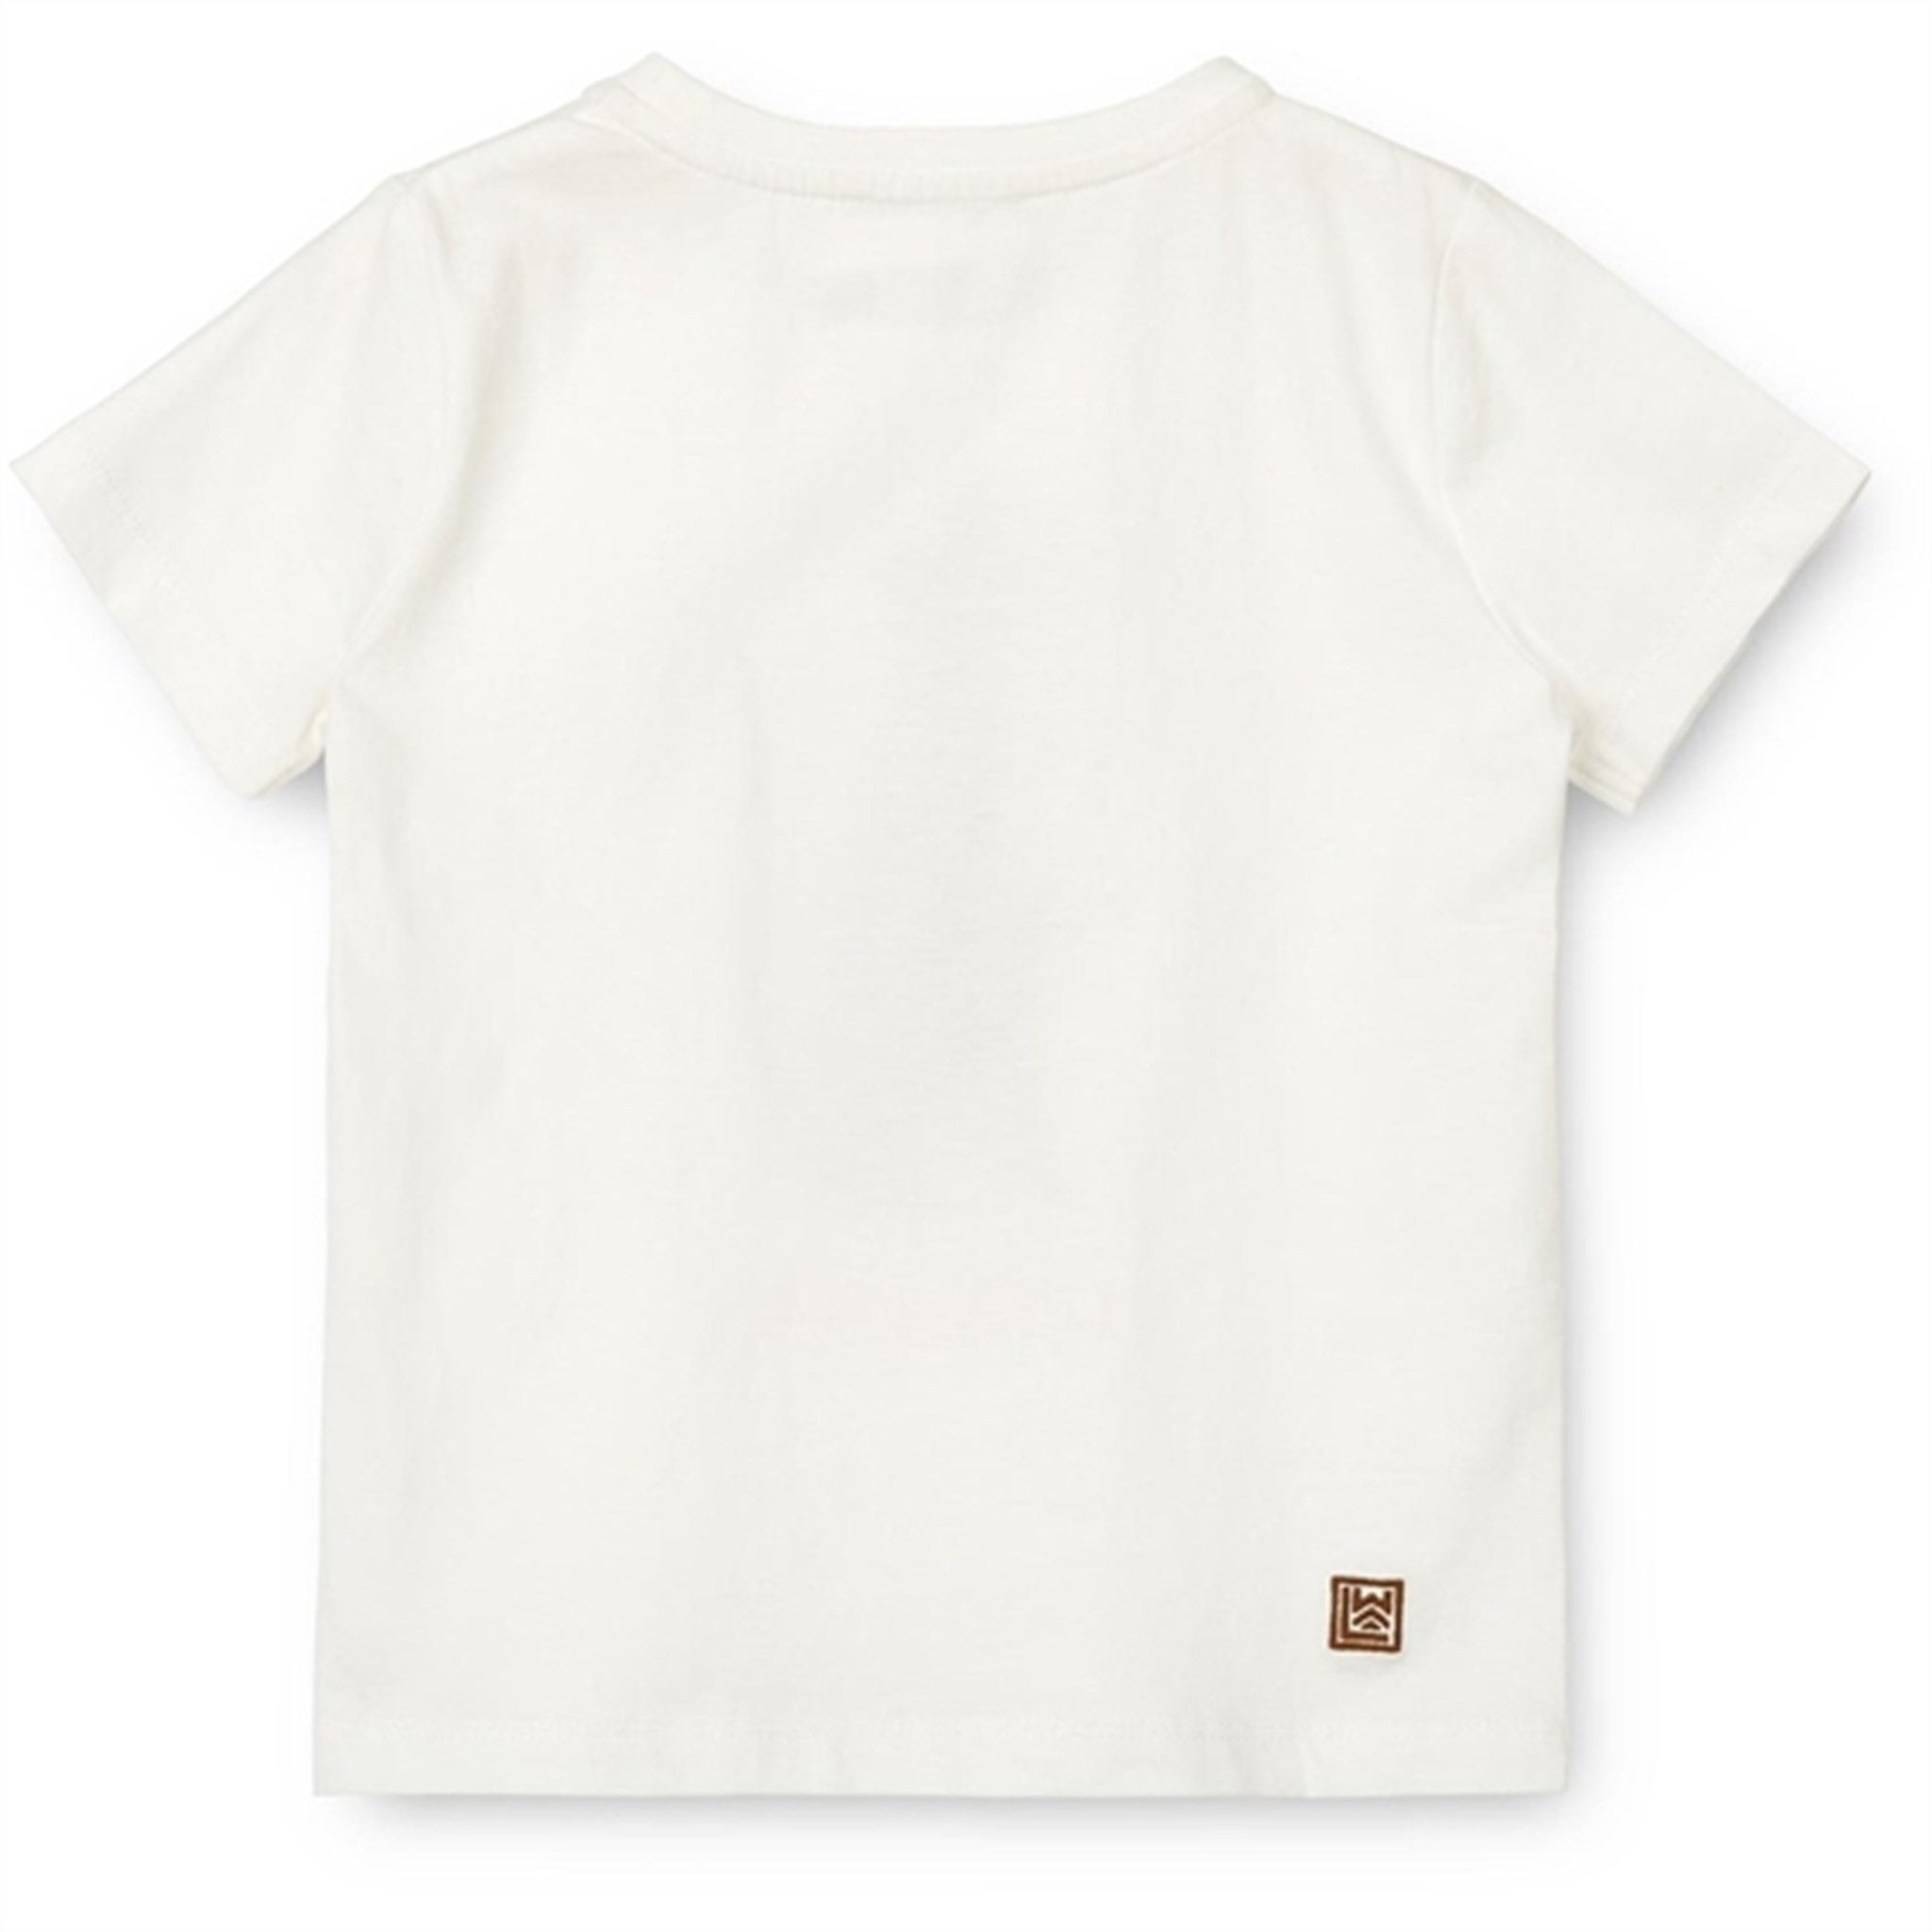 Liewood Leopard/Crisp White Apia Bebis Placement T-shirt 2